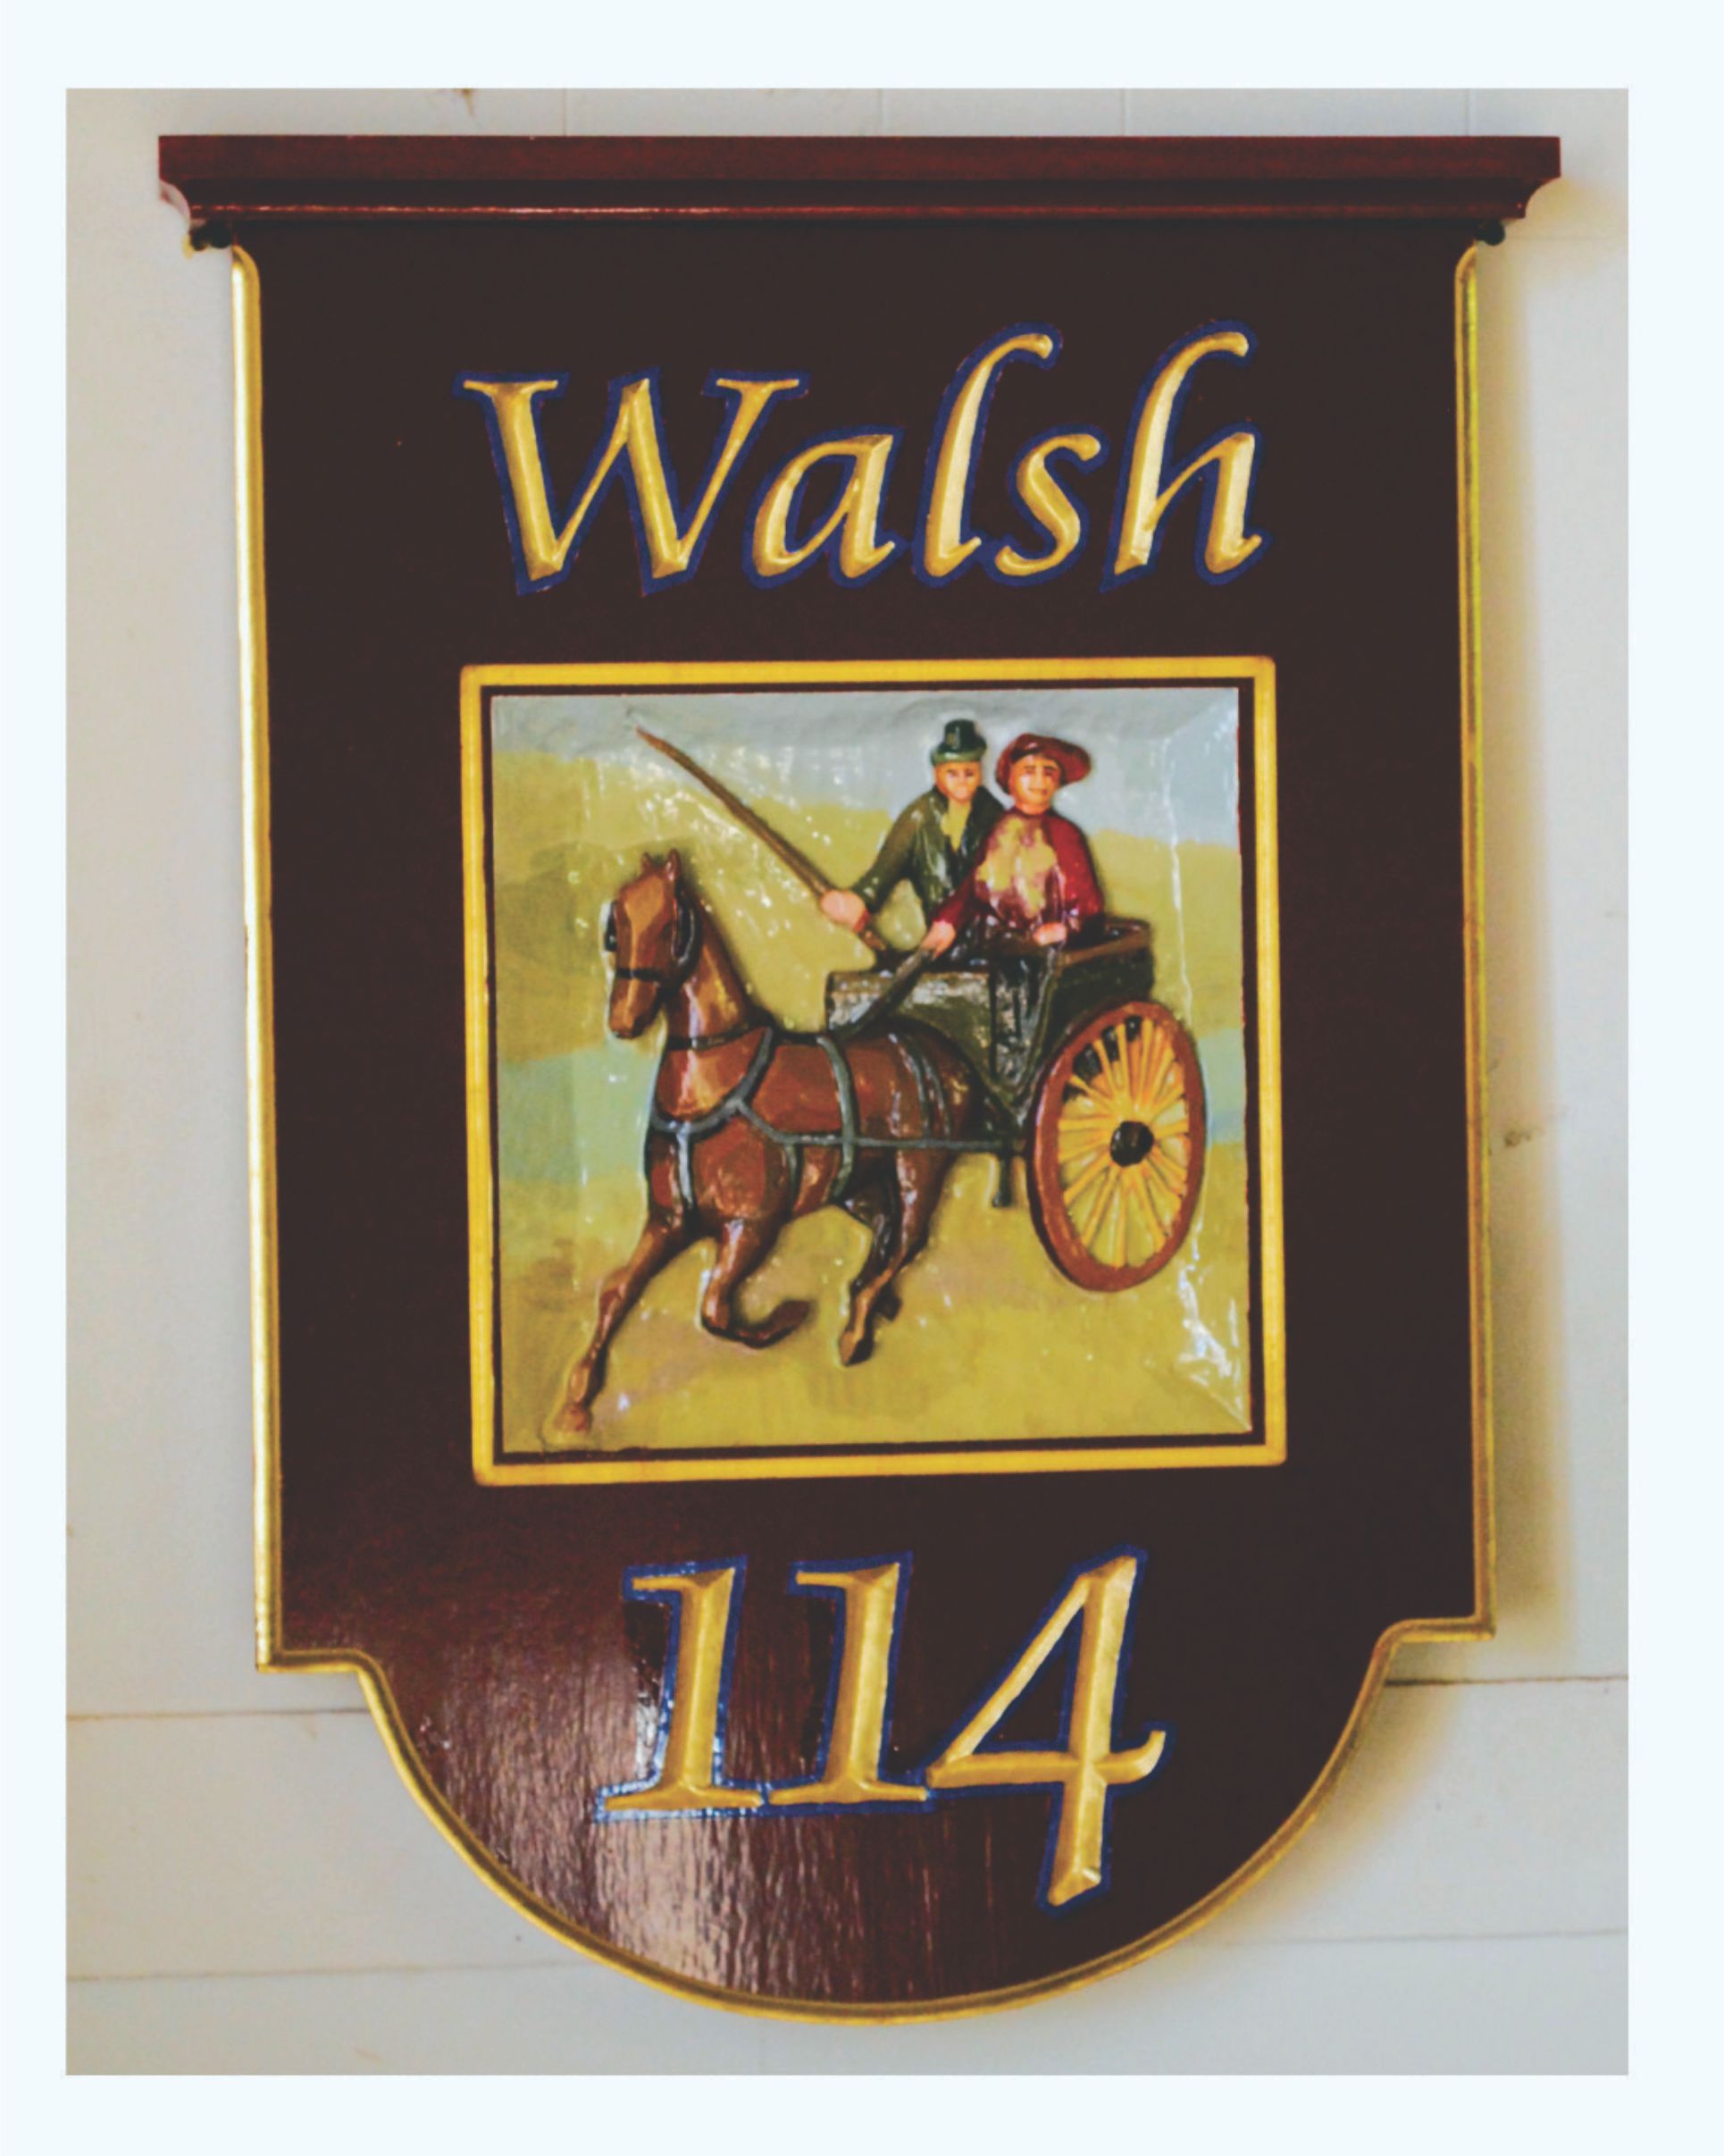 Walsh 114